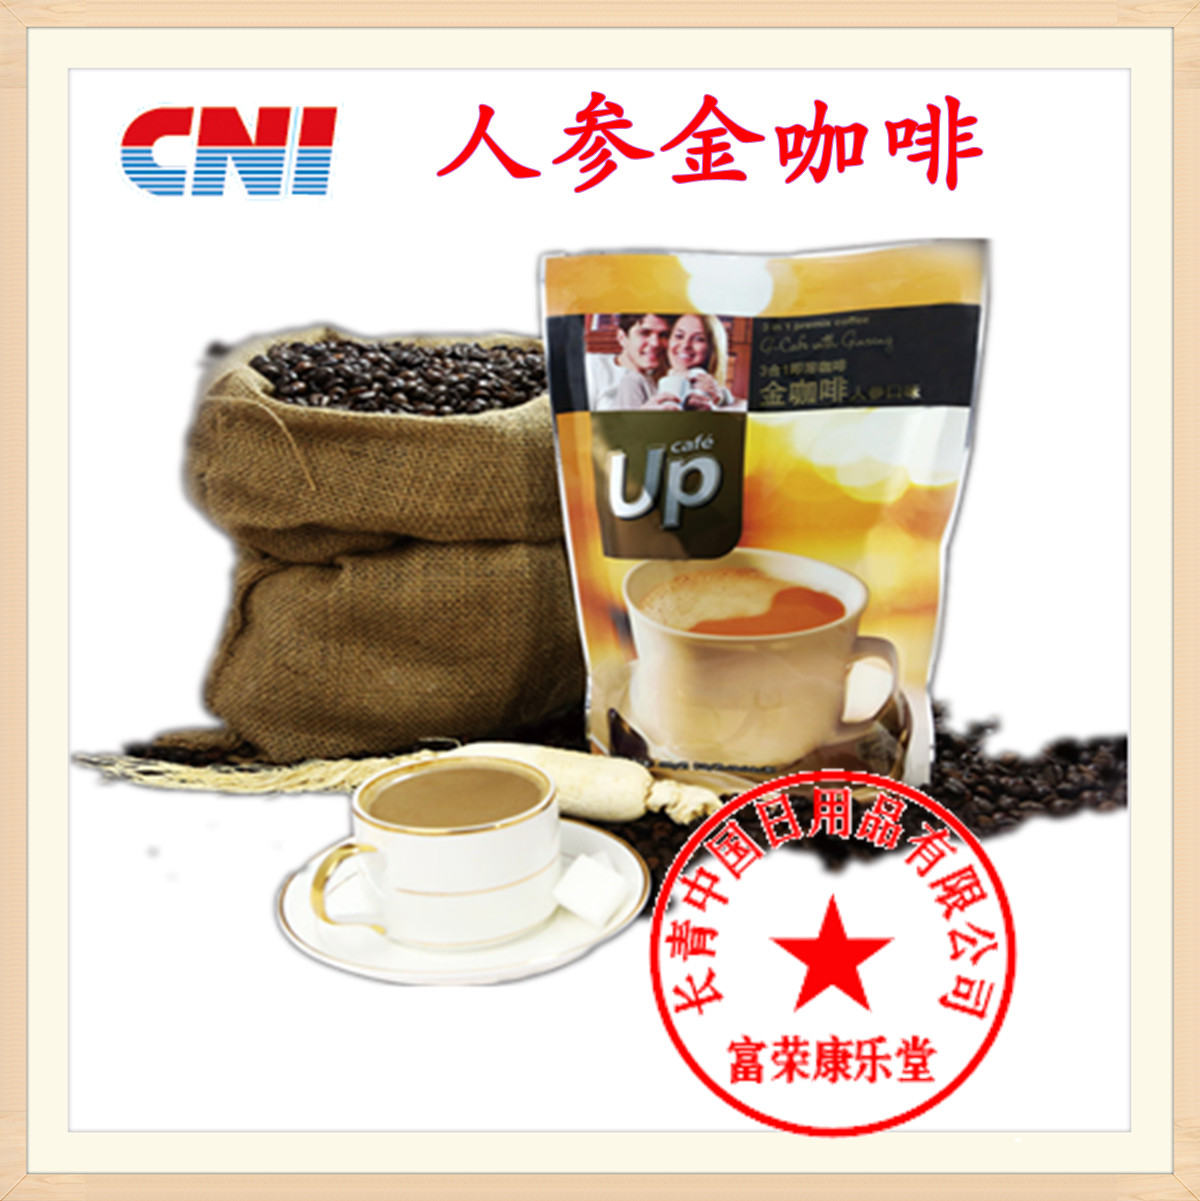 原装正品天然有机保健速溶马来西亚进口CNI人参金咖啡